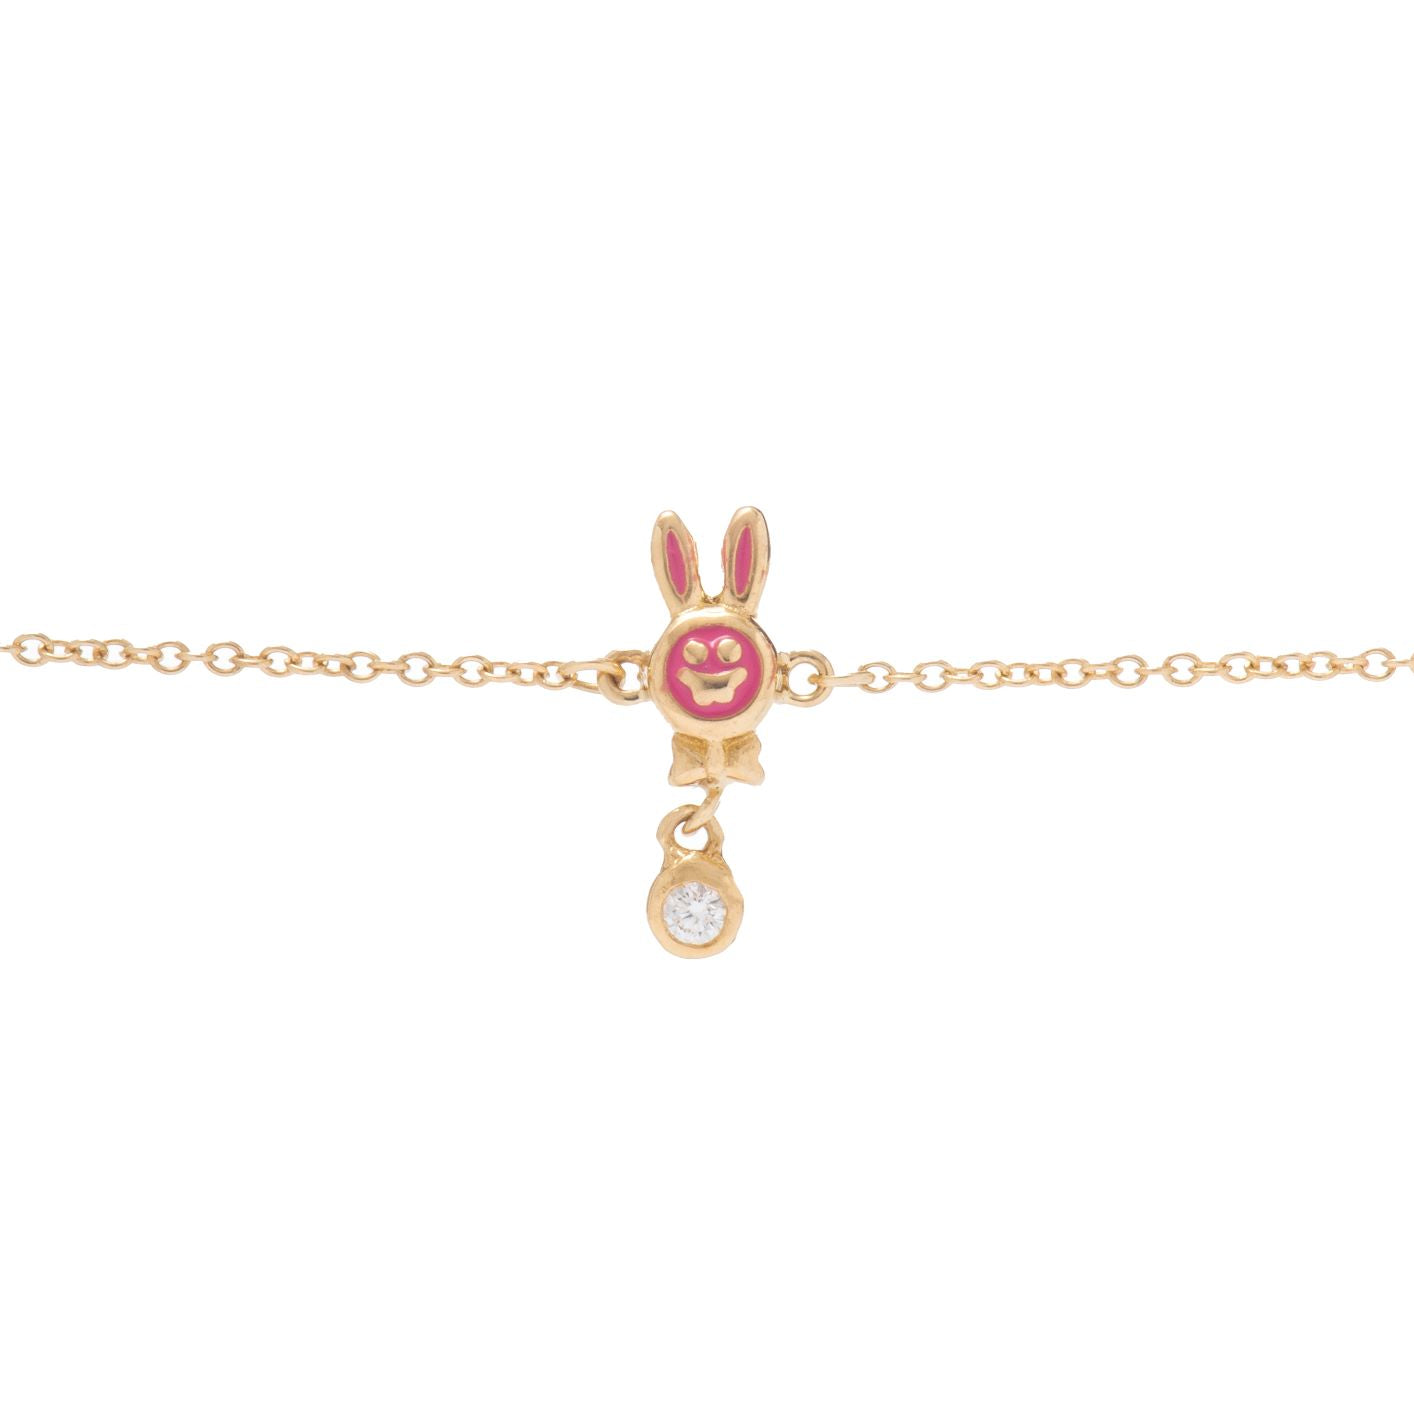 Kid's Delightful Rabbit Shaped Bracelet in Yellow 18 K Gold - NB0760